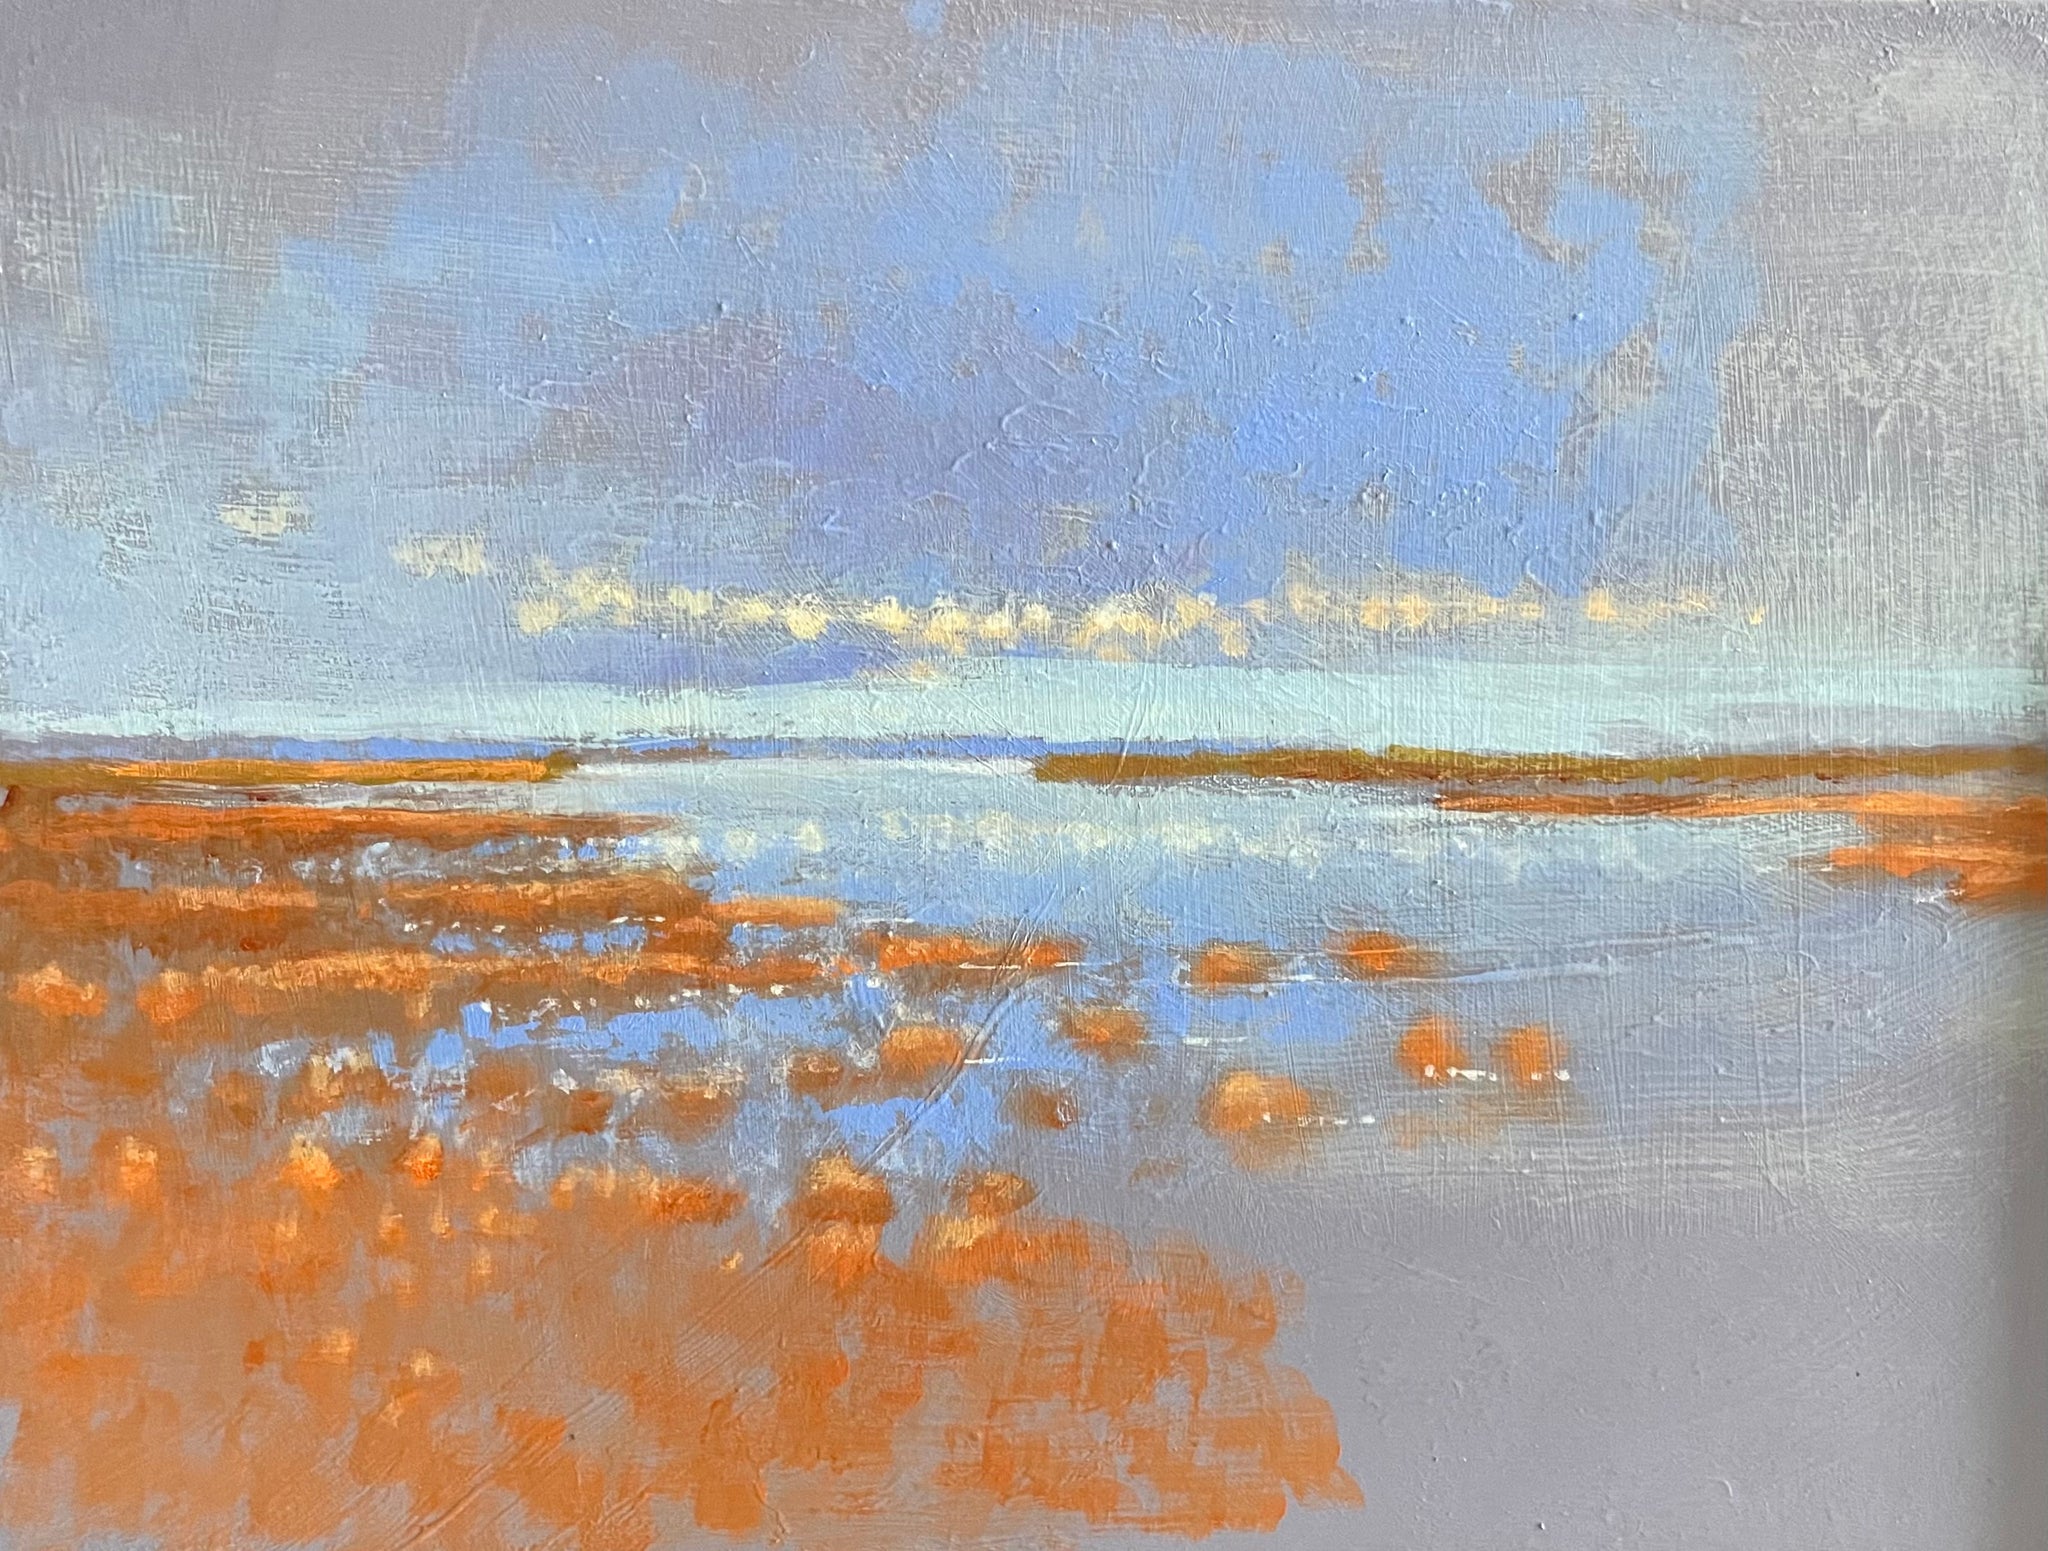 Blue sky and orange salt marsh at high tide ￼